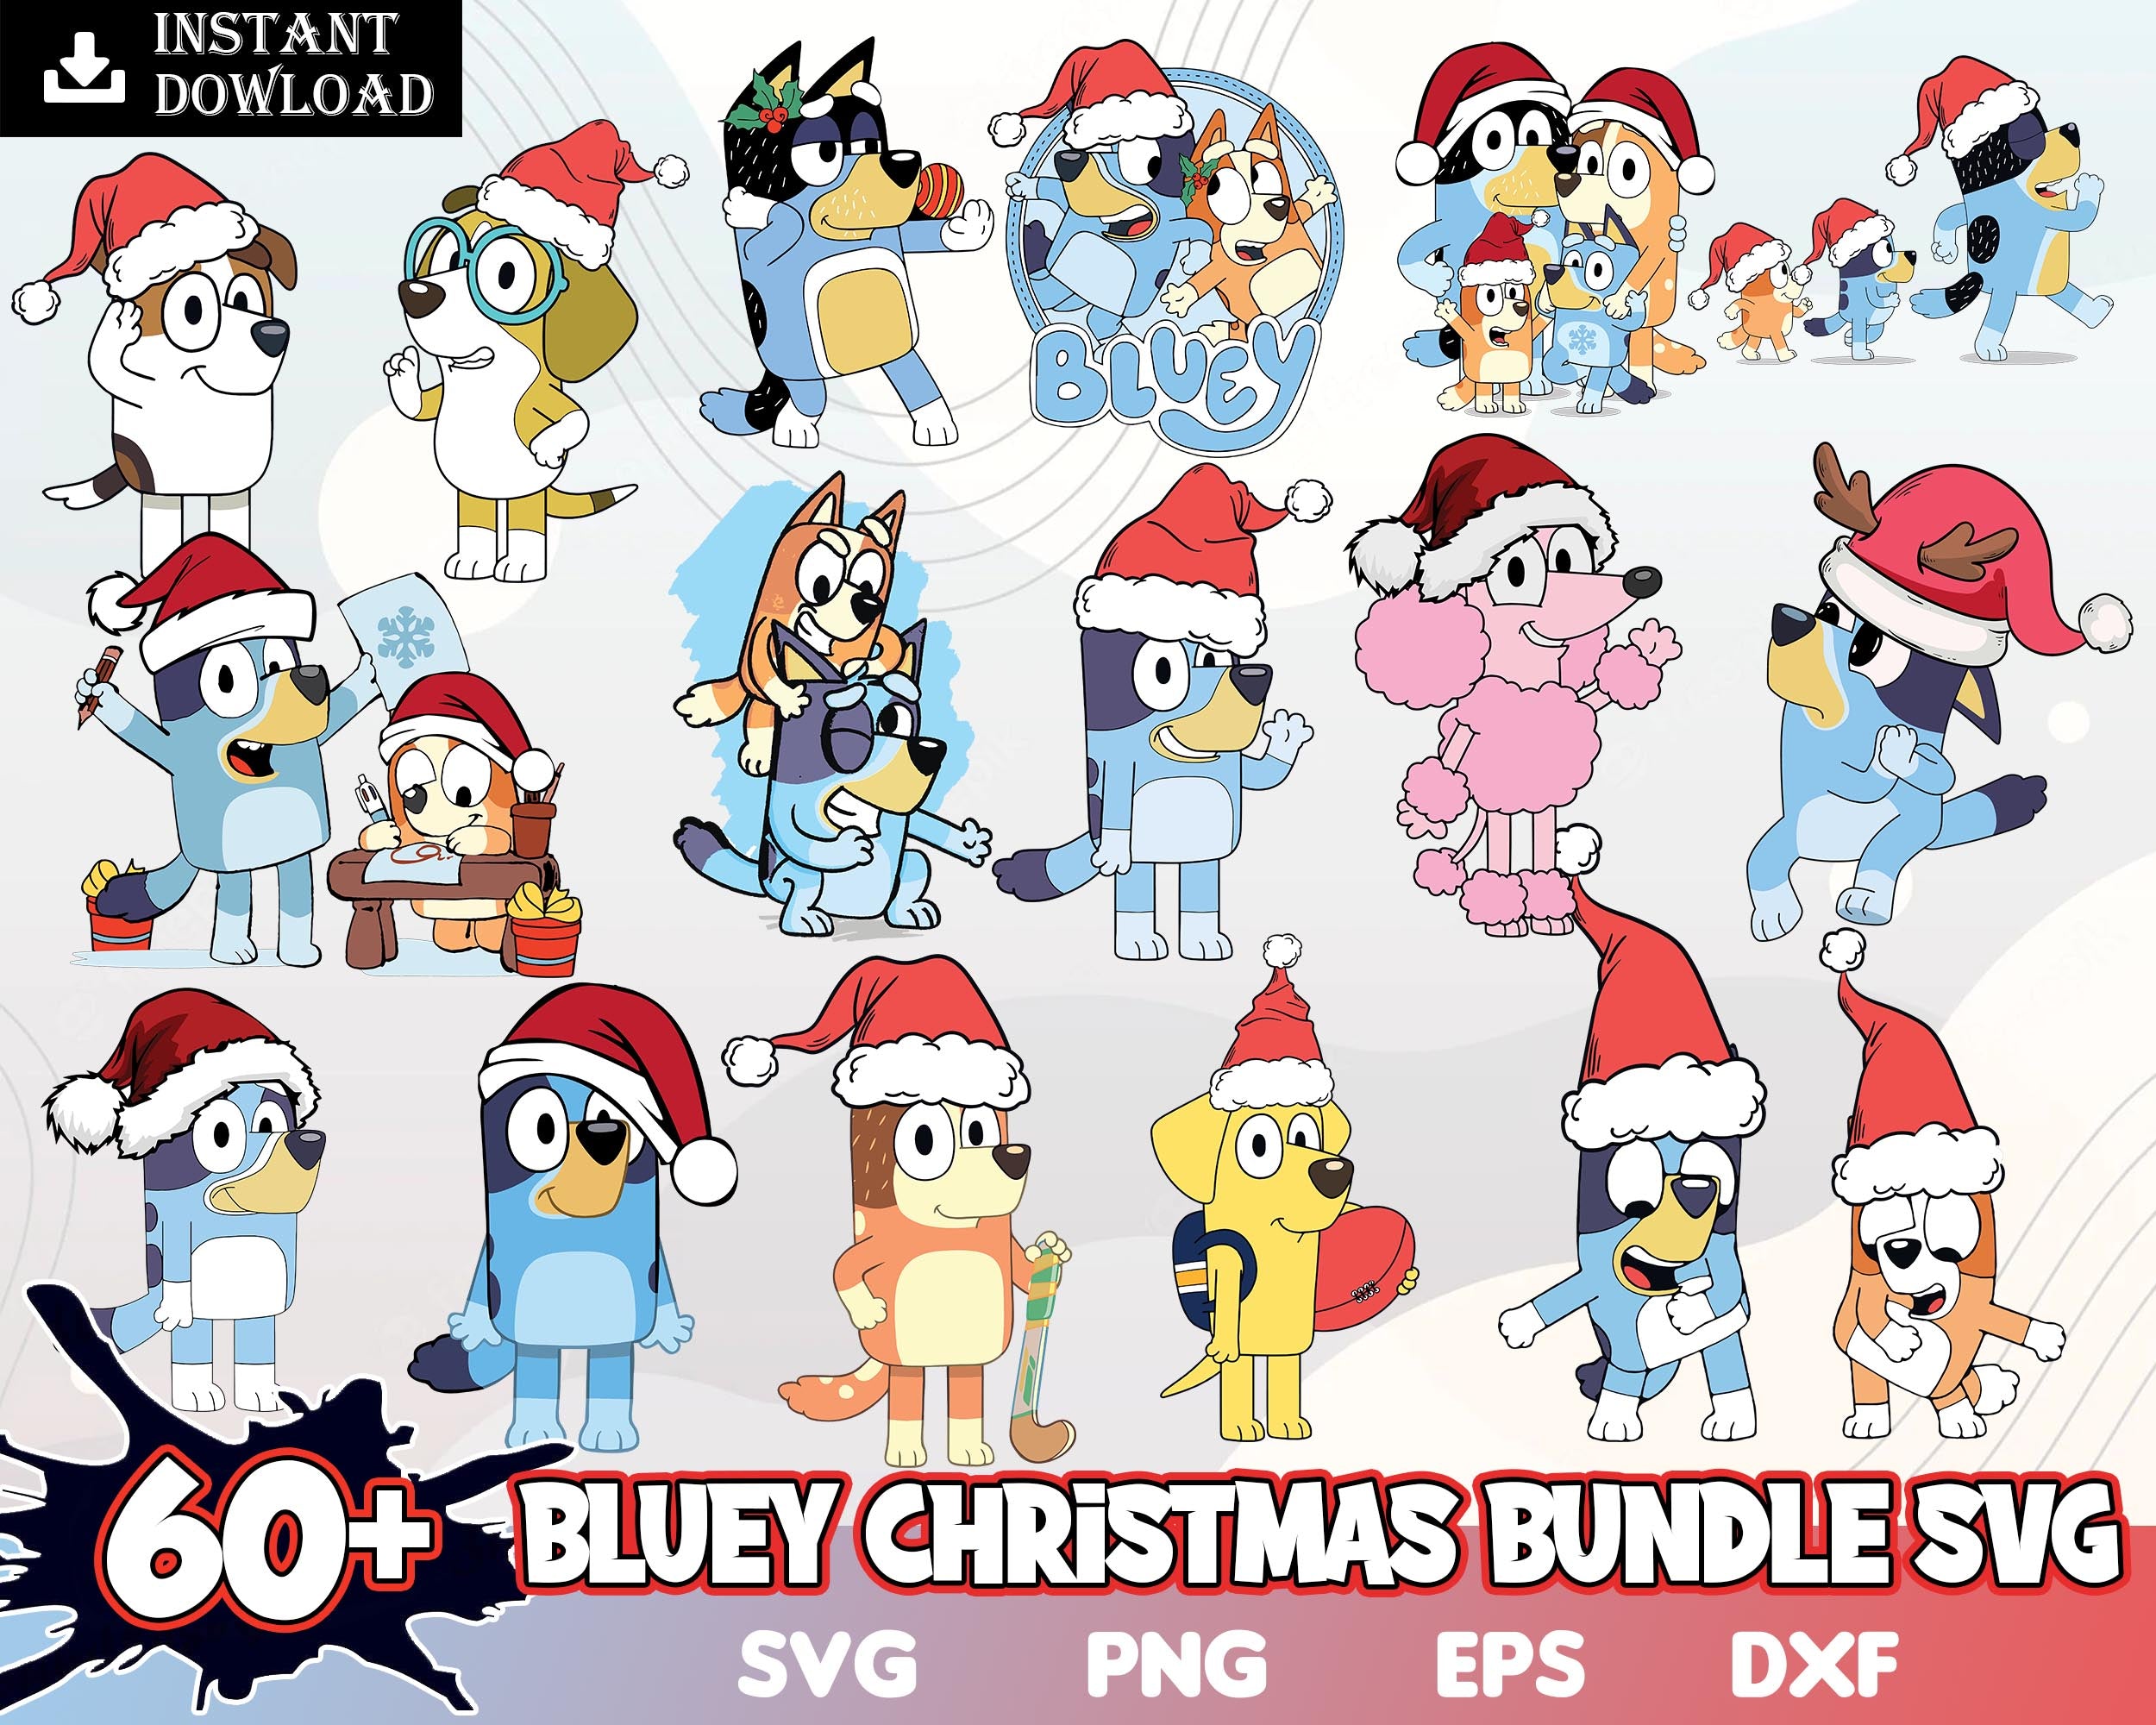 60+ Bluey Christmas svg bundle, Bluey vector, bluey Xmas png, bluey cutfile, bluey clipart, bluey eps, dxf bundle